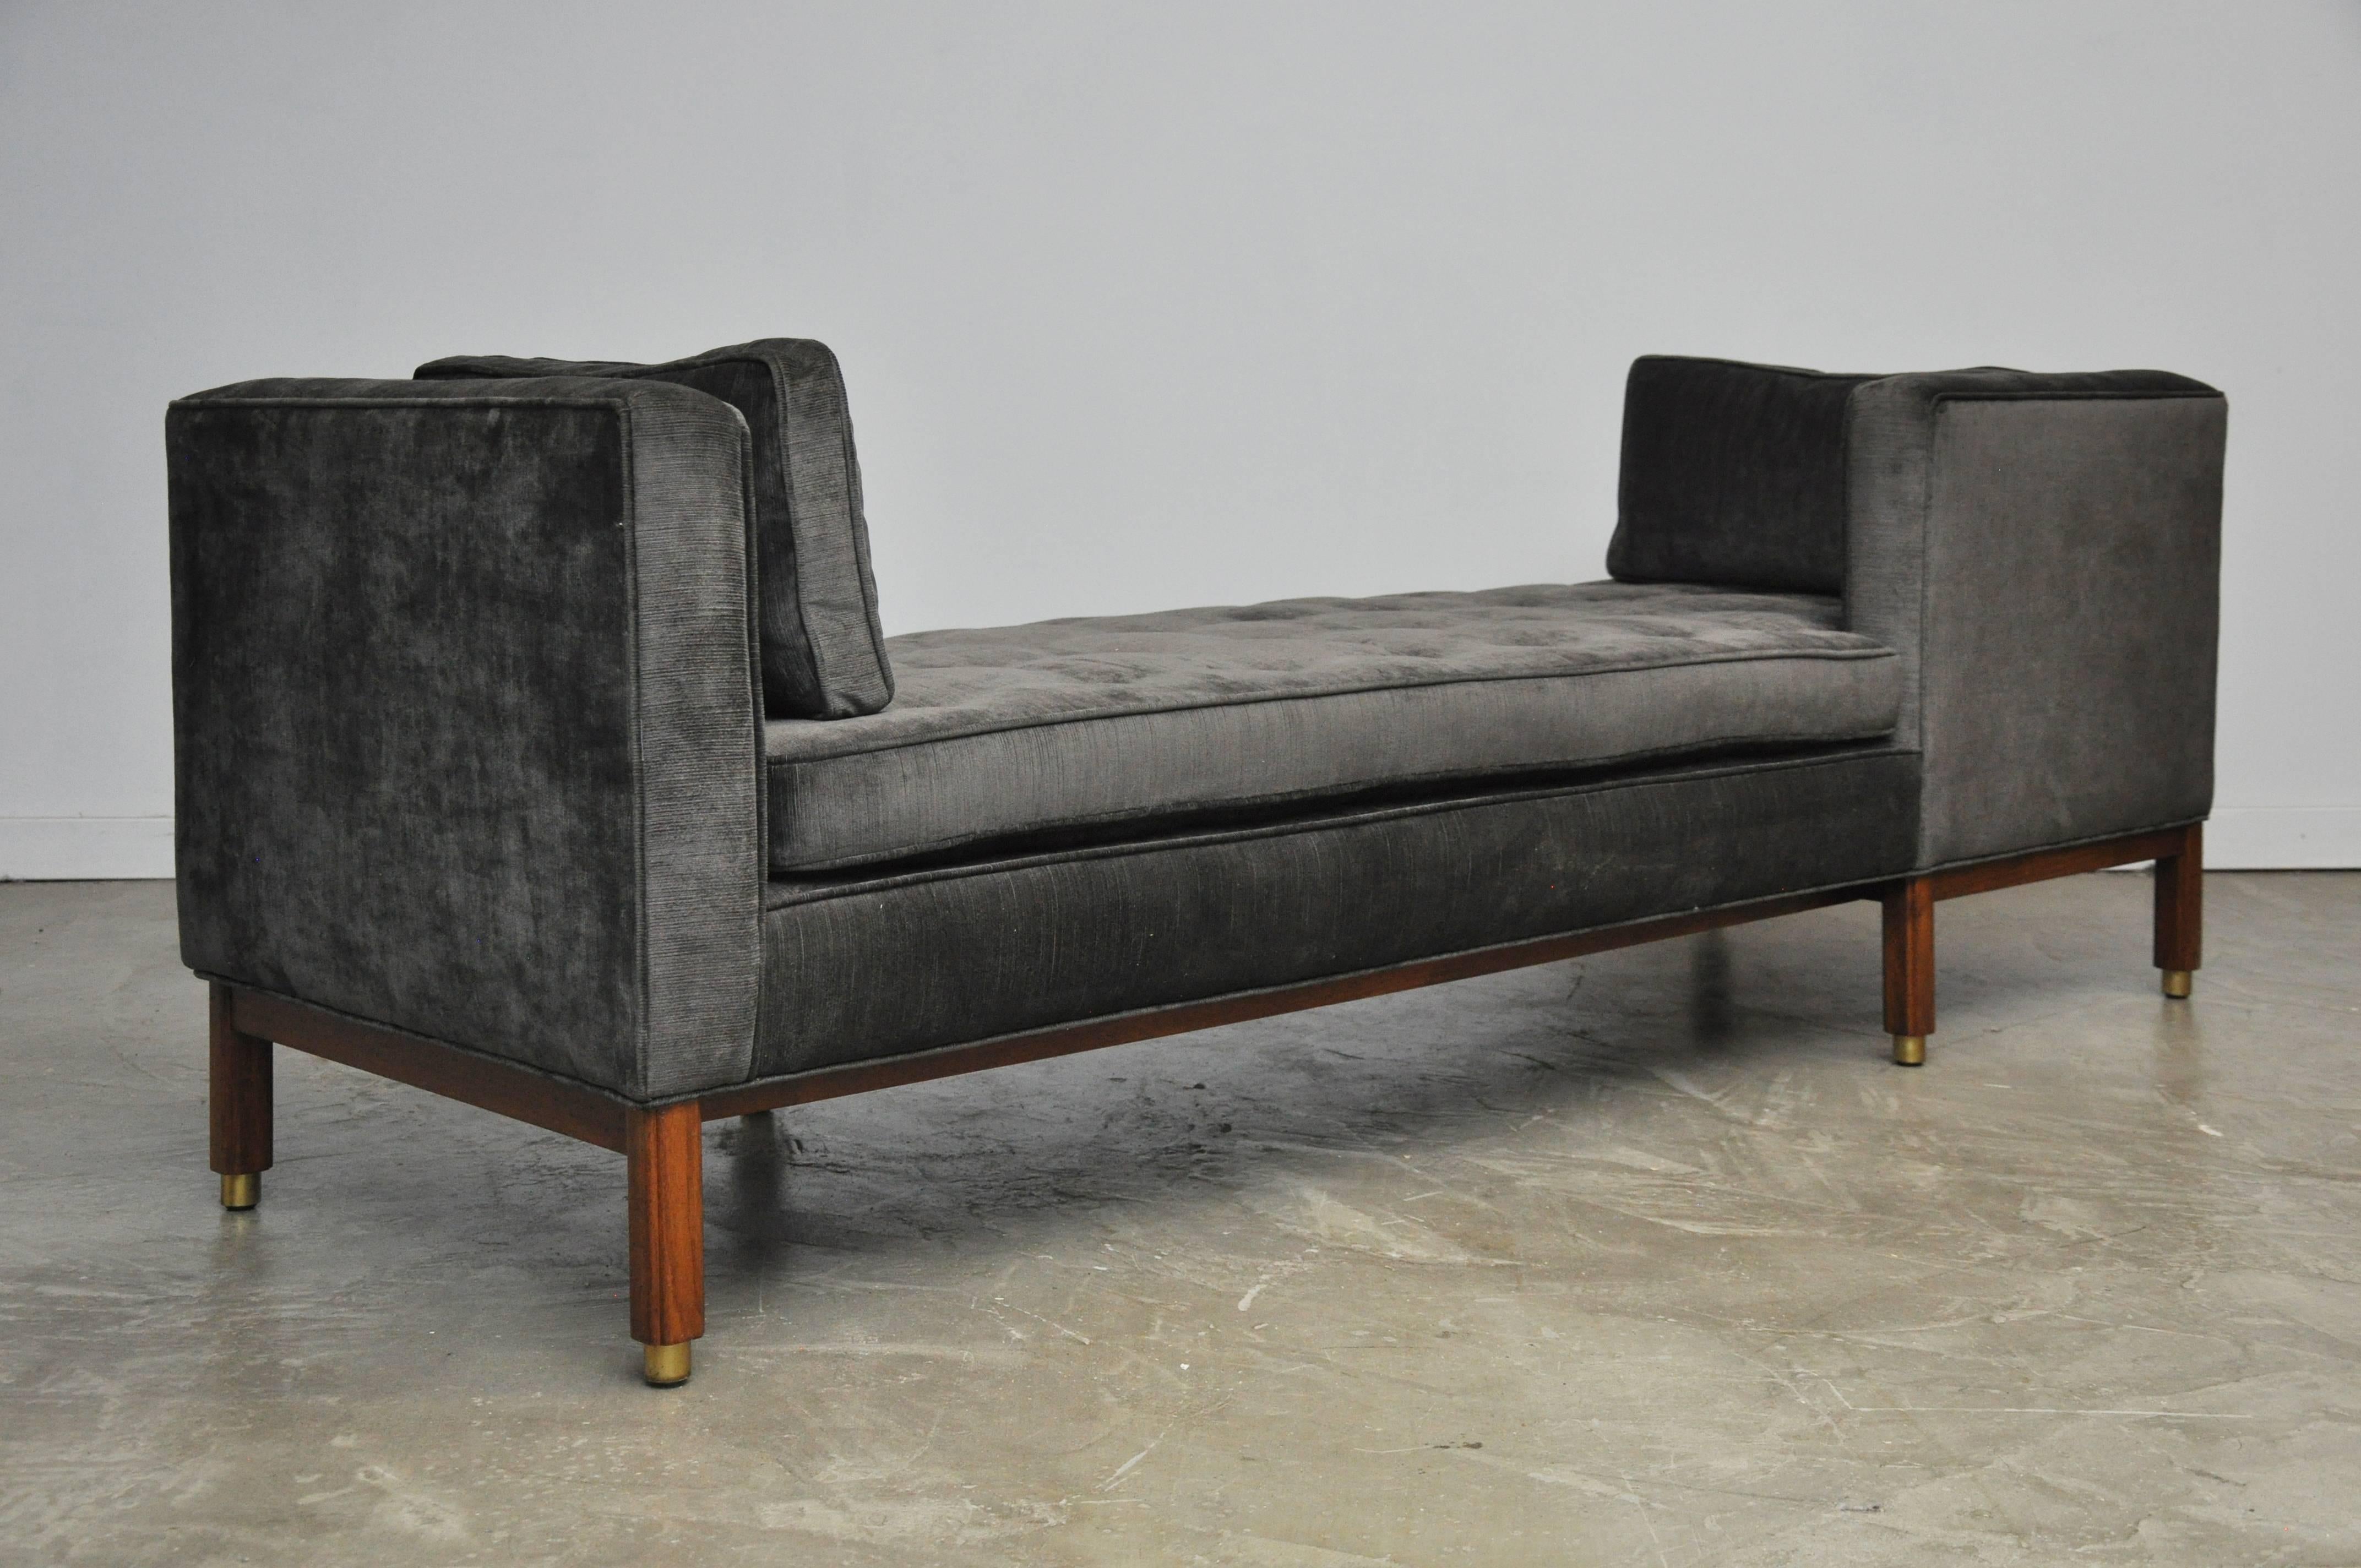 American Dunbar Tete-a-tete Sofa by Edward Wormley